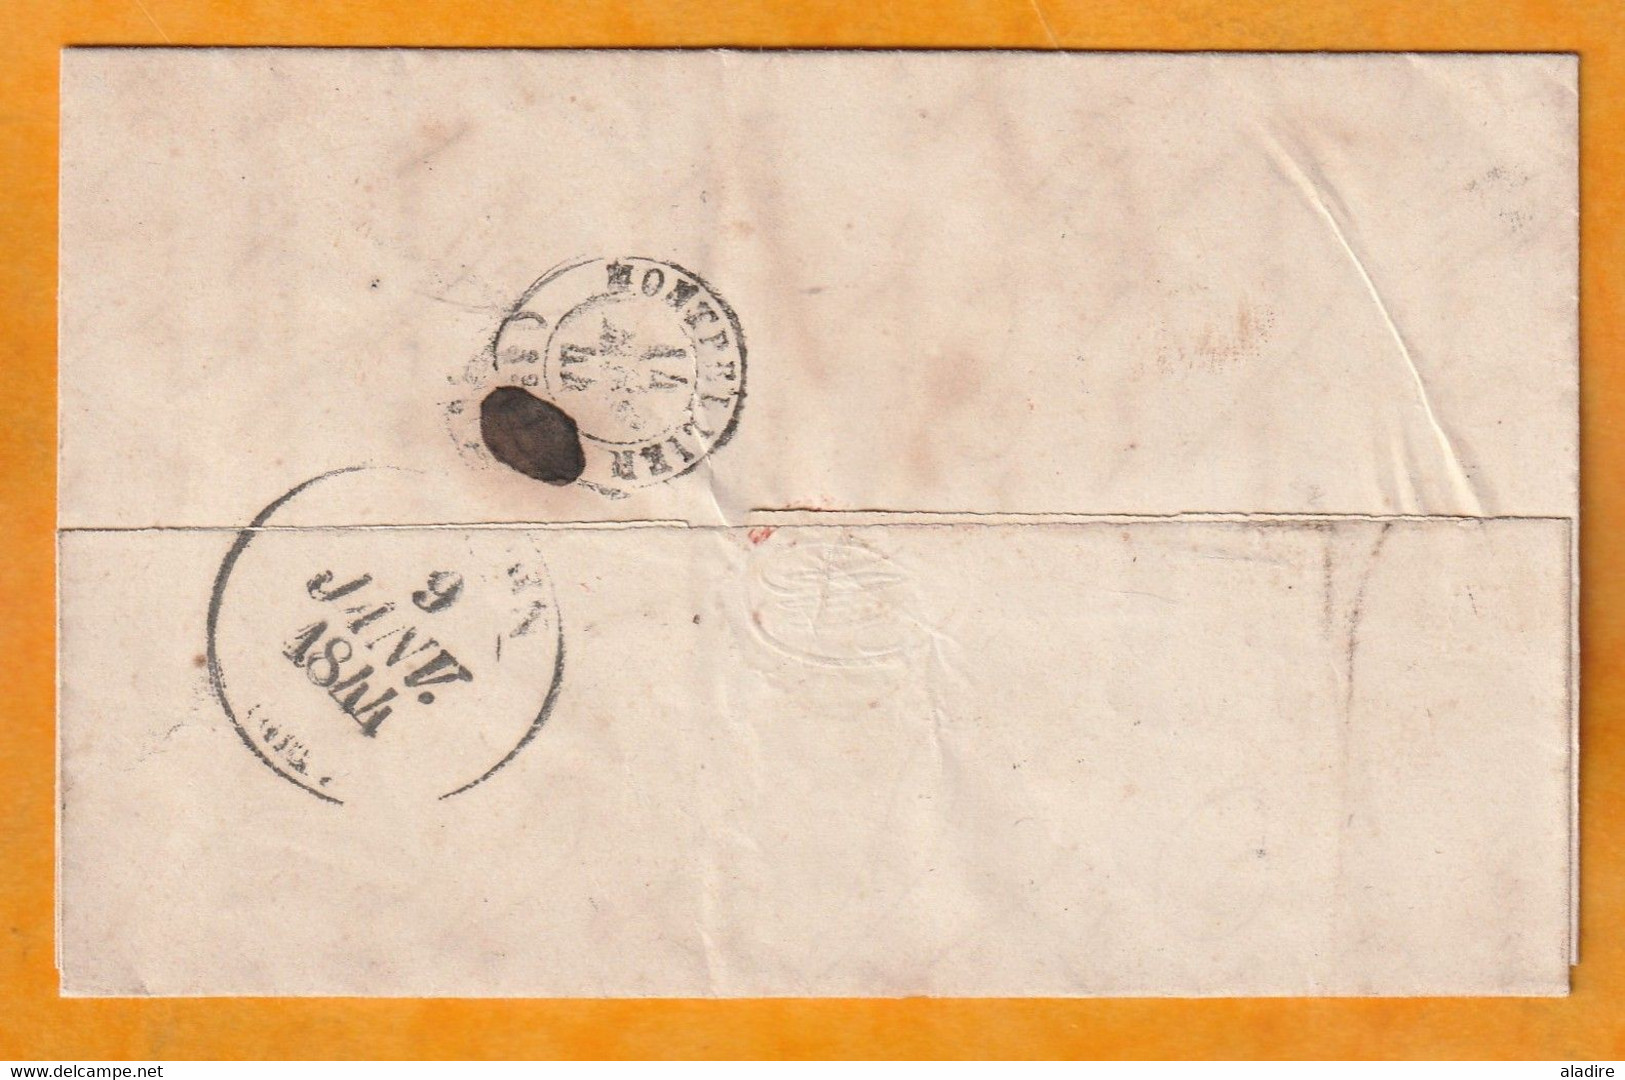 1844 - Lettre pliée avec corresp  de HESDIN, Pas de Calais vers Saint Georges, Hérault - via Montpellier - Décime rural